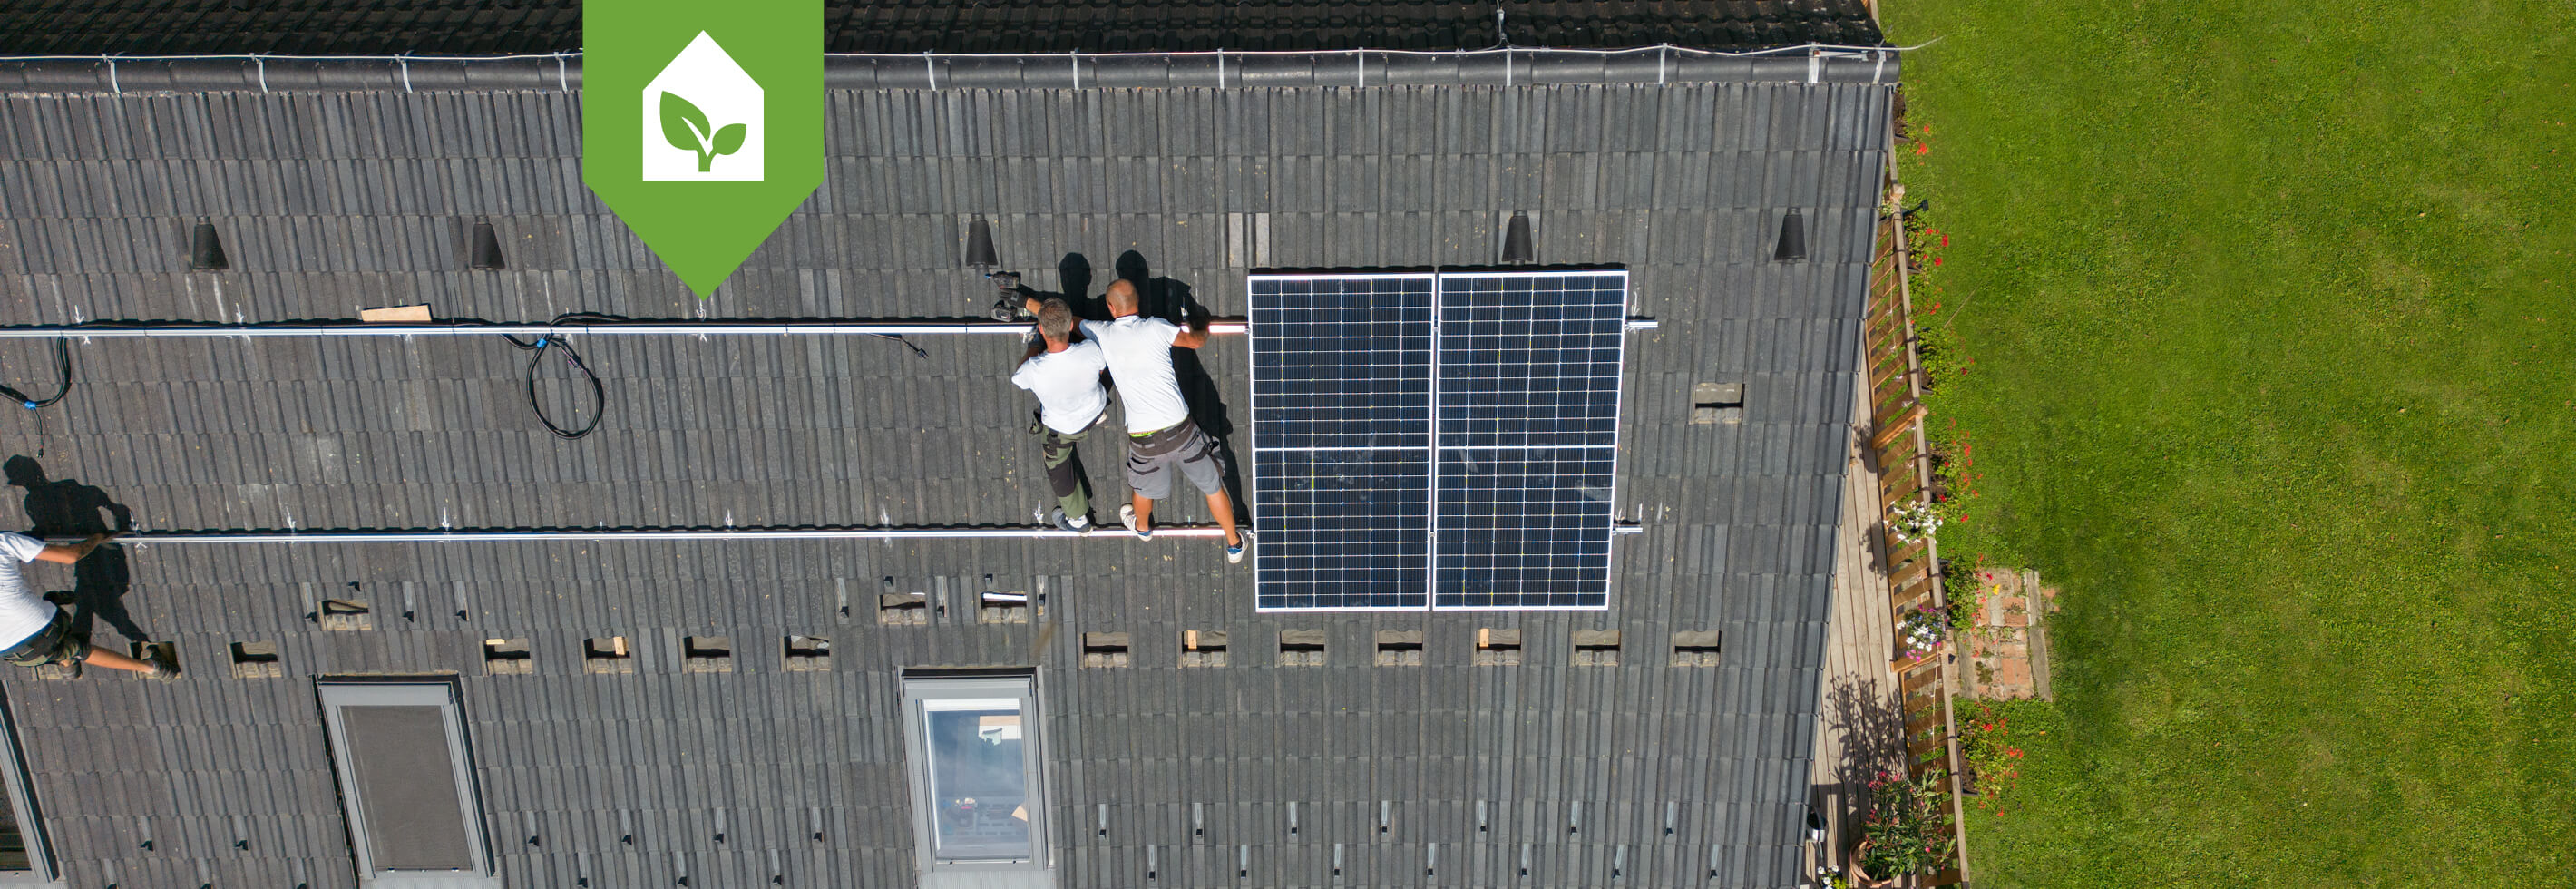 Duurzaam wonen - zonnepanelen - Beter buiten begint binnen - Remeha